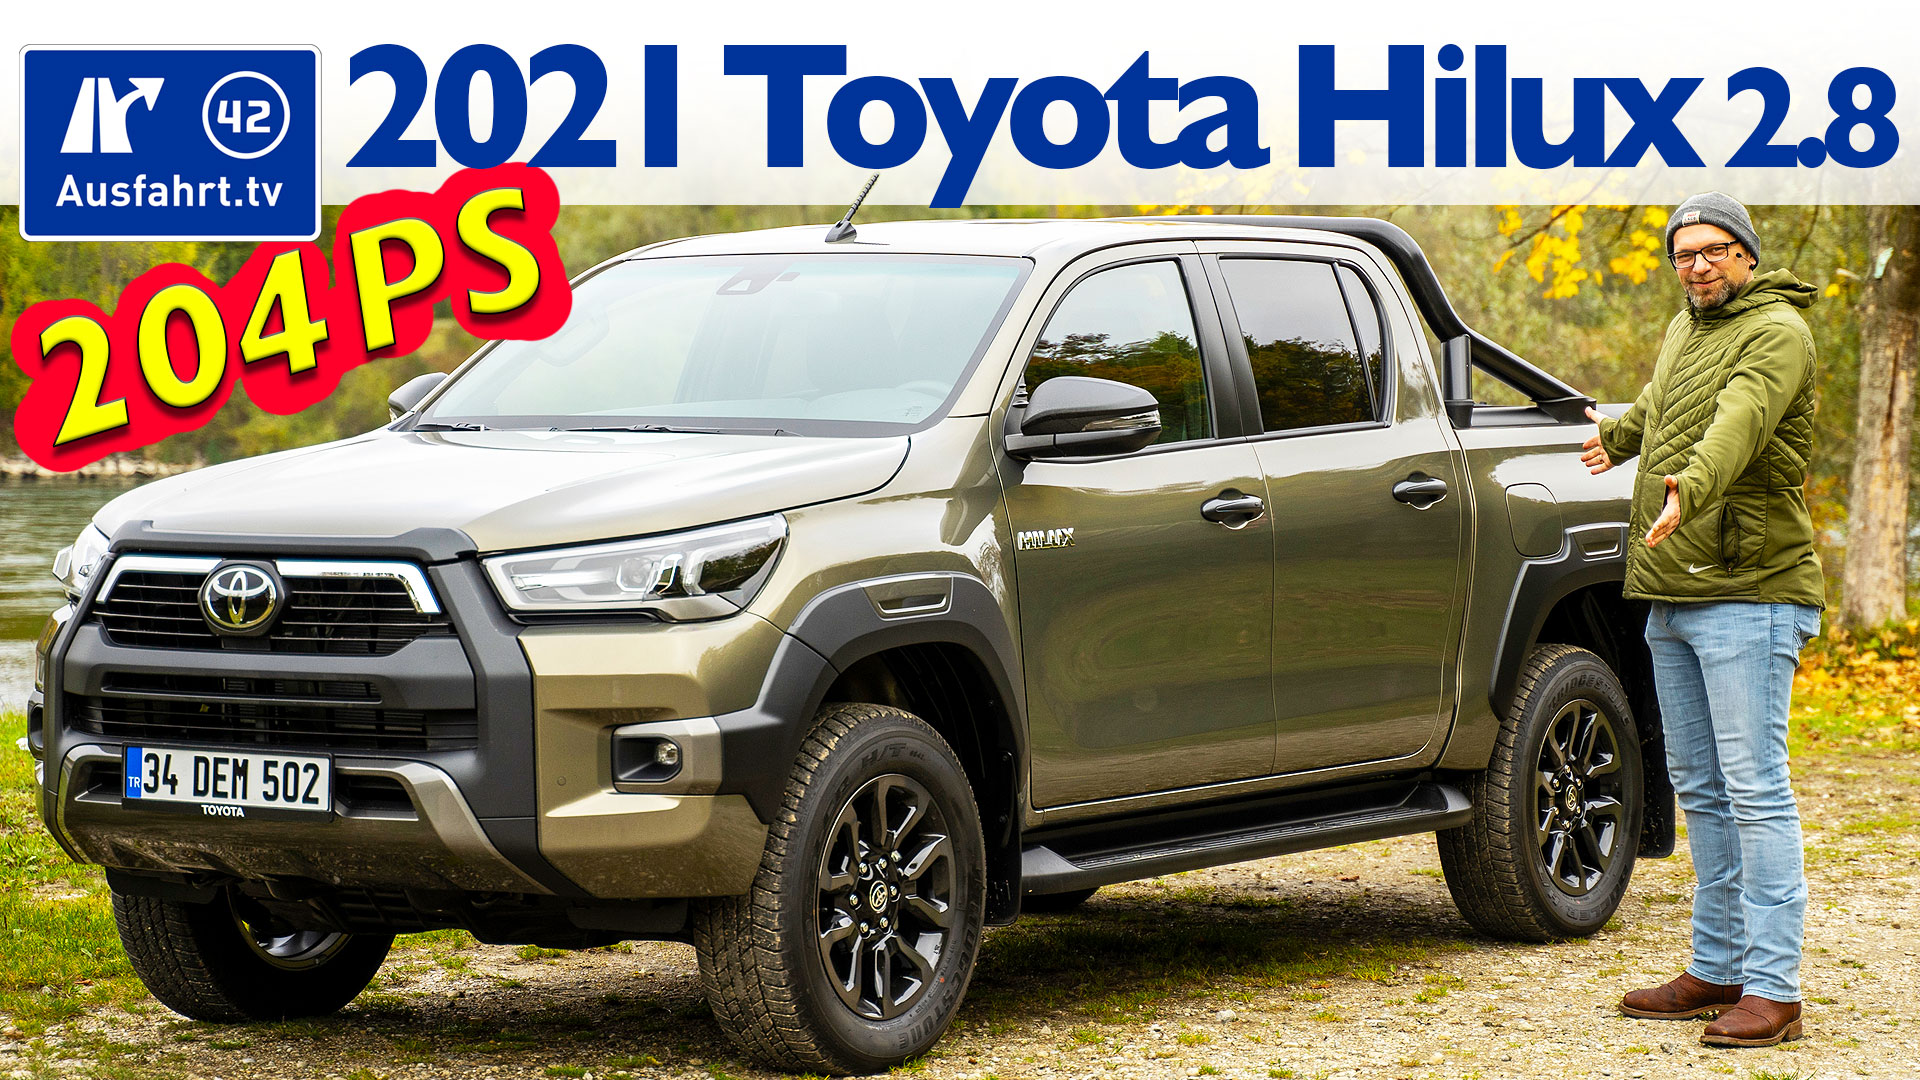 Über 8000 Euro beim Kauf der Pick-up-Legende Toyota Hilux sparen - AUTO BILD